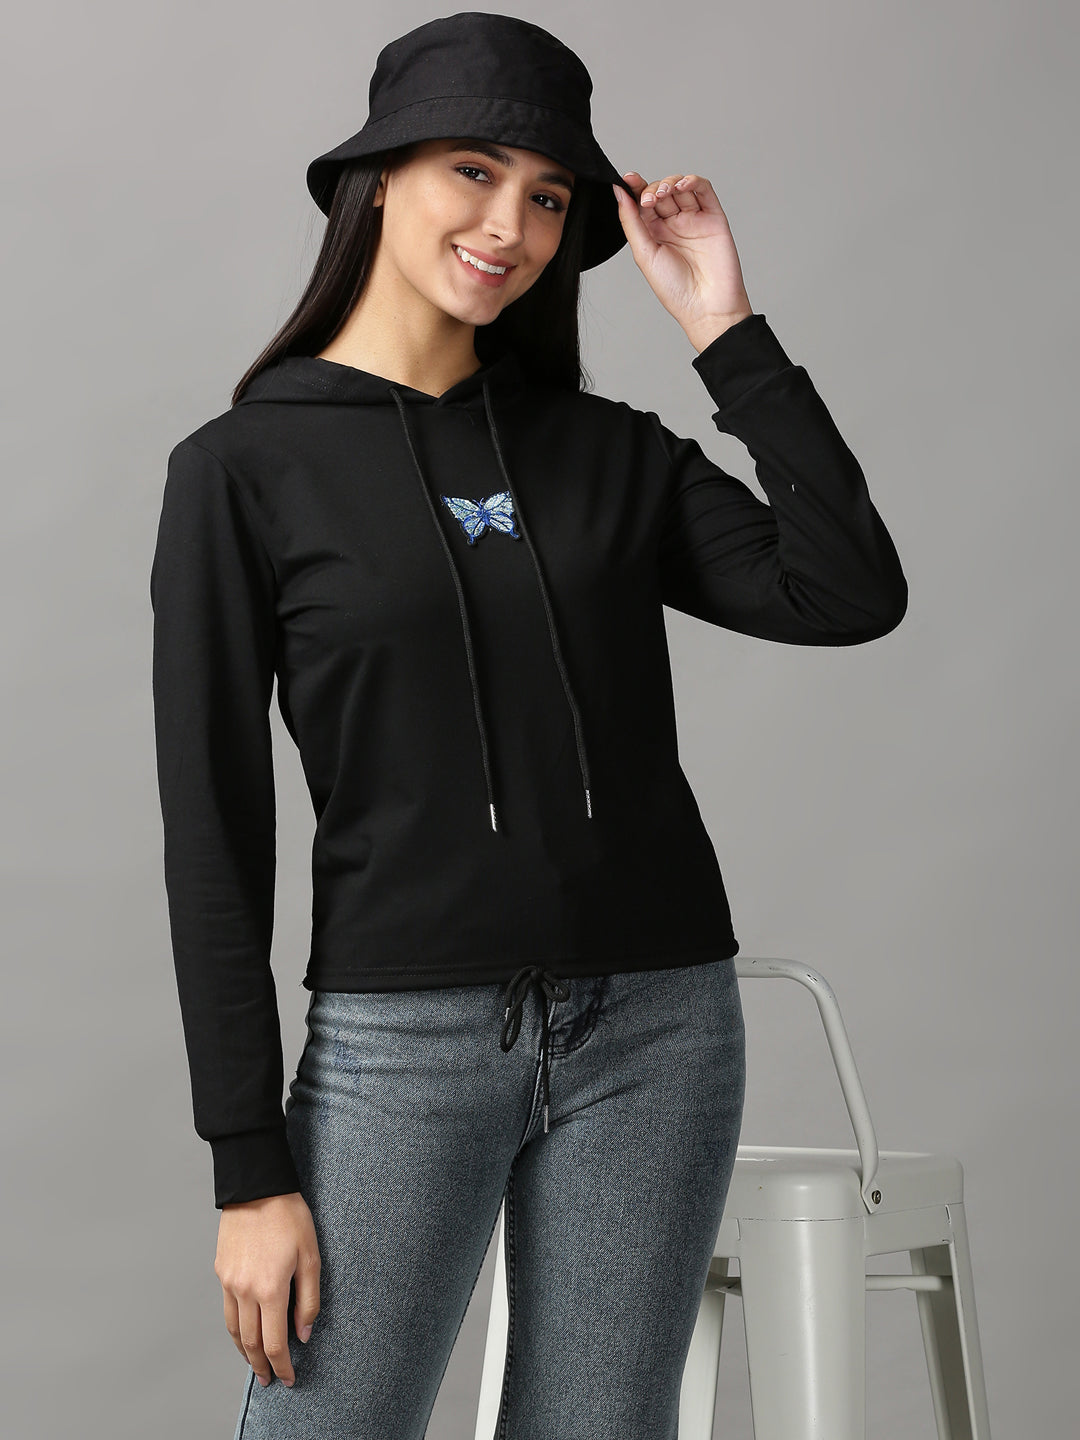 Women's Black Solid Sweatshirt